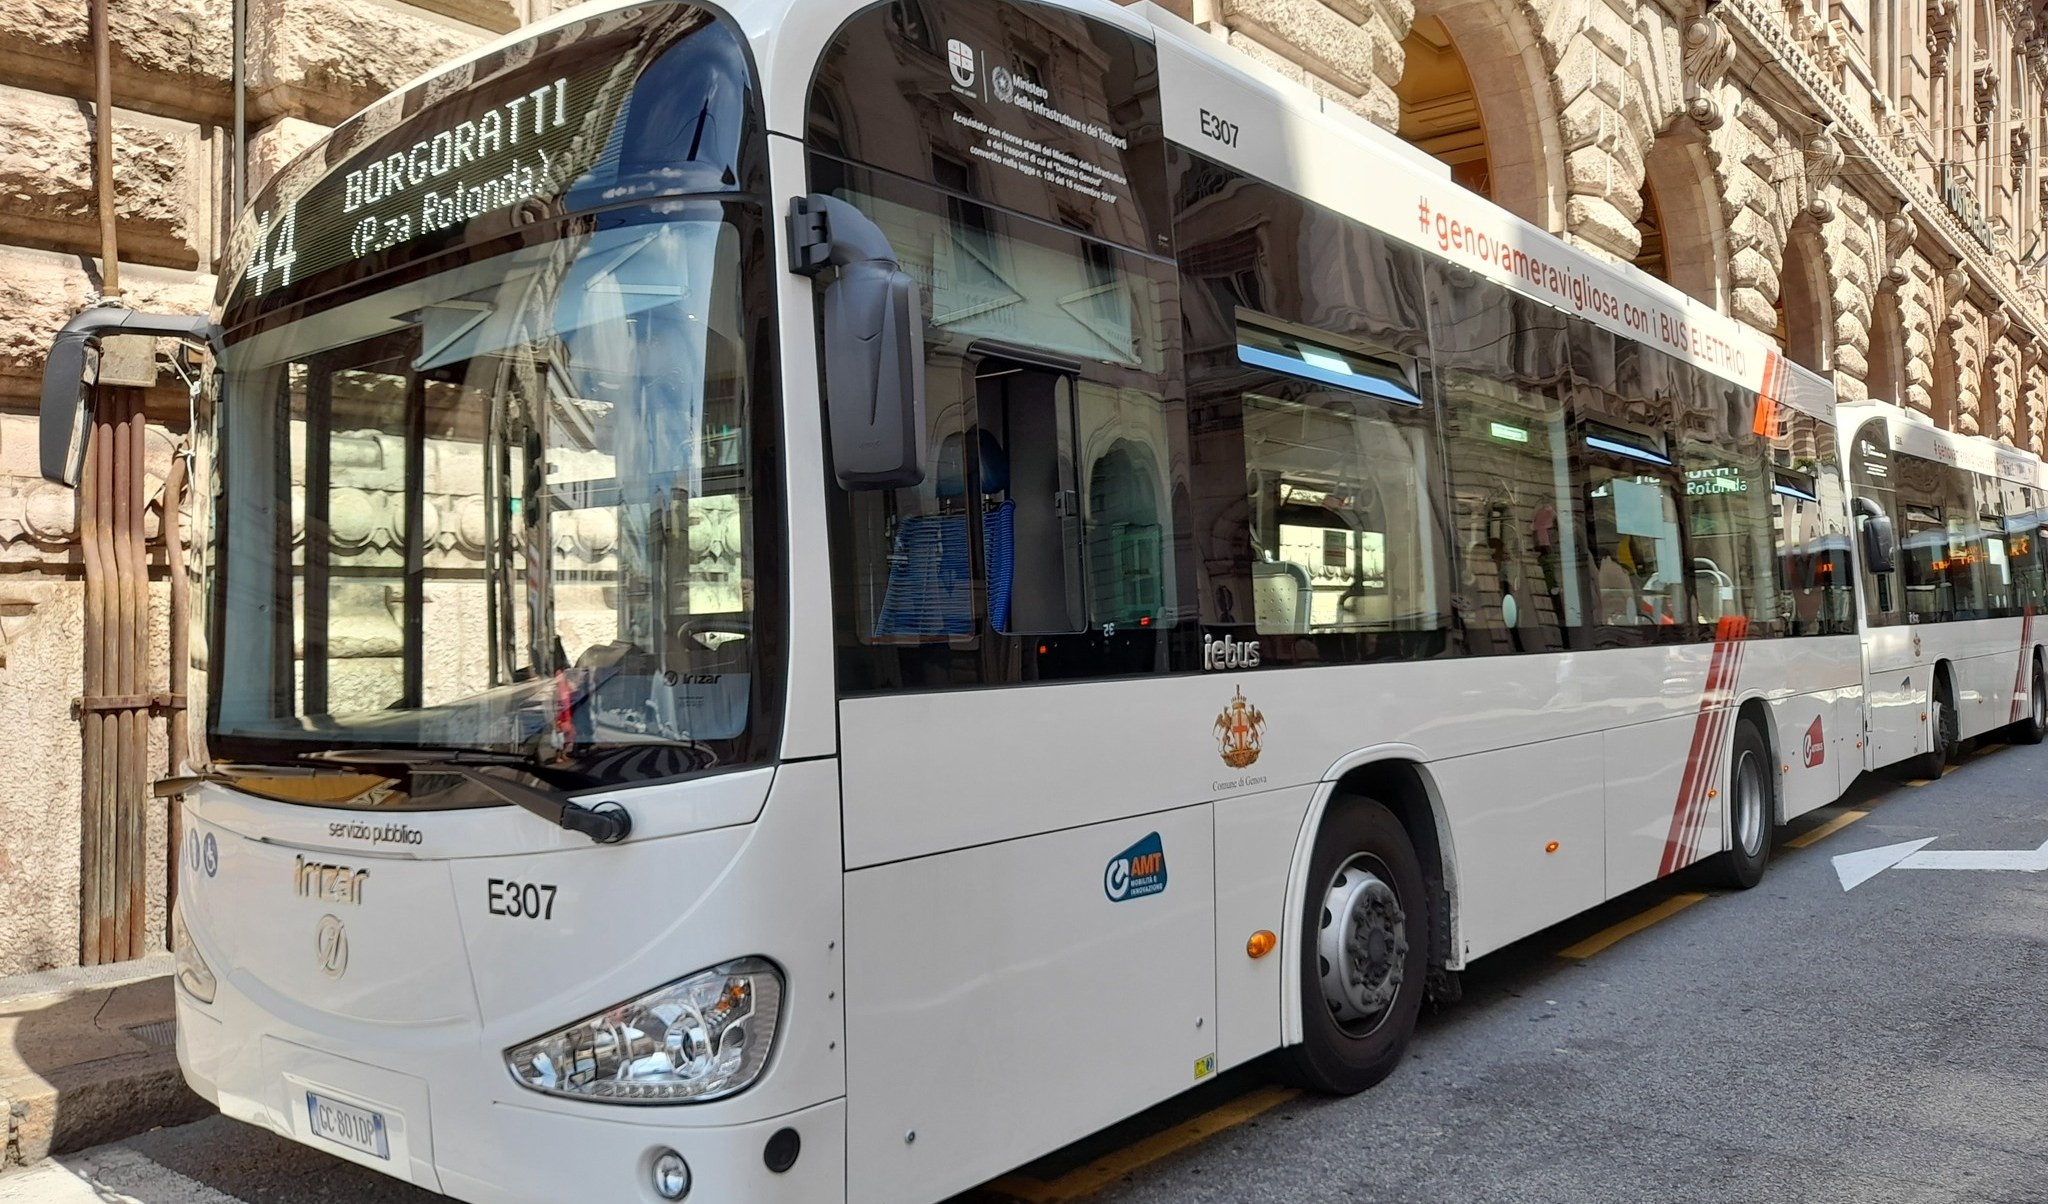 Sciopero nazionale dei bus, ecco gli orari garantiti a Genova